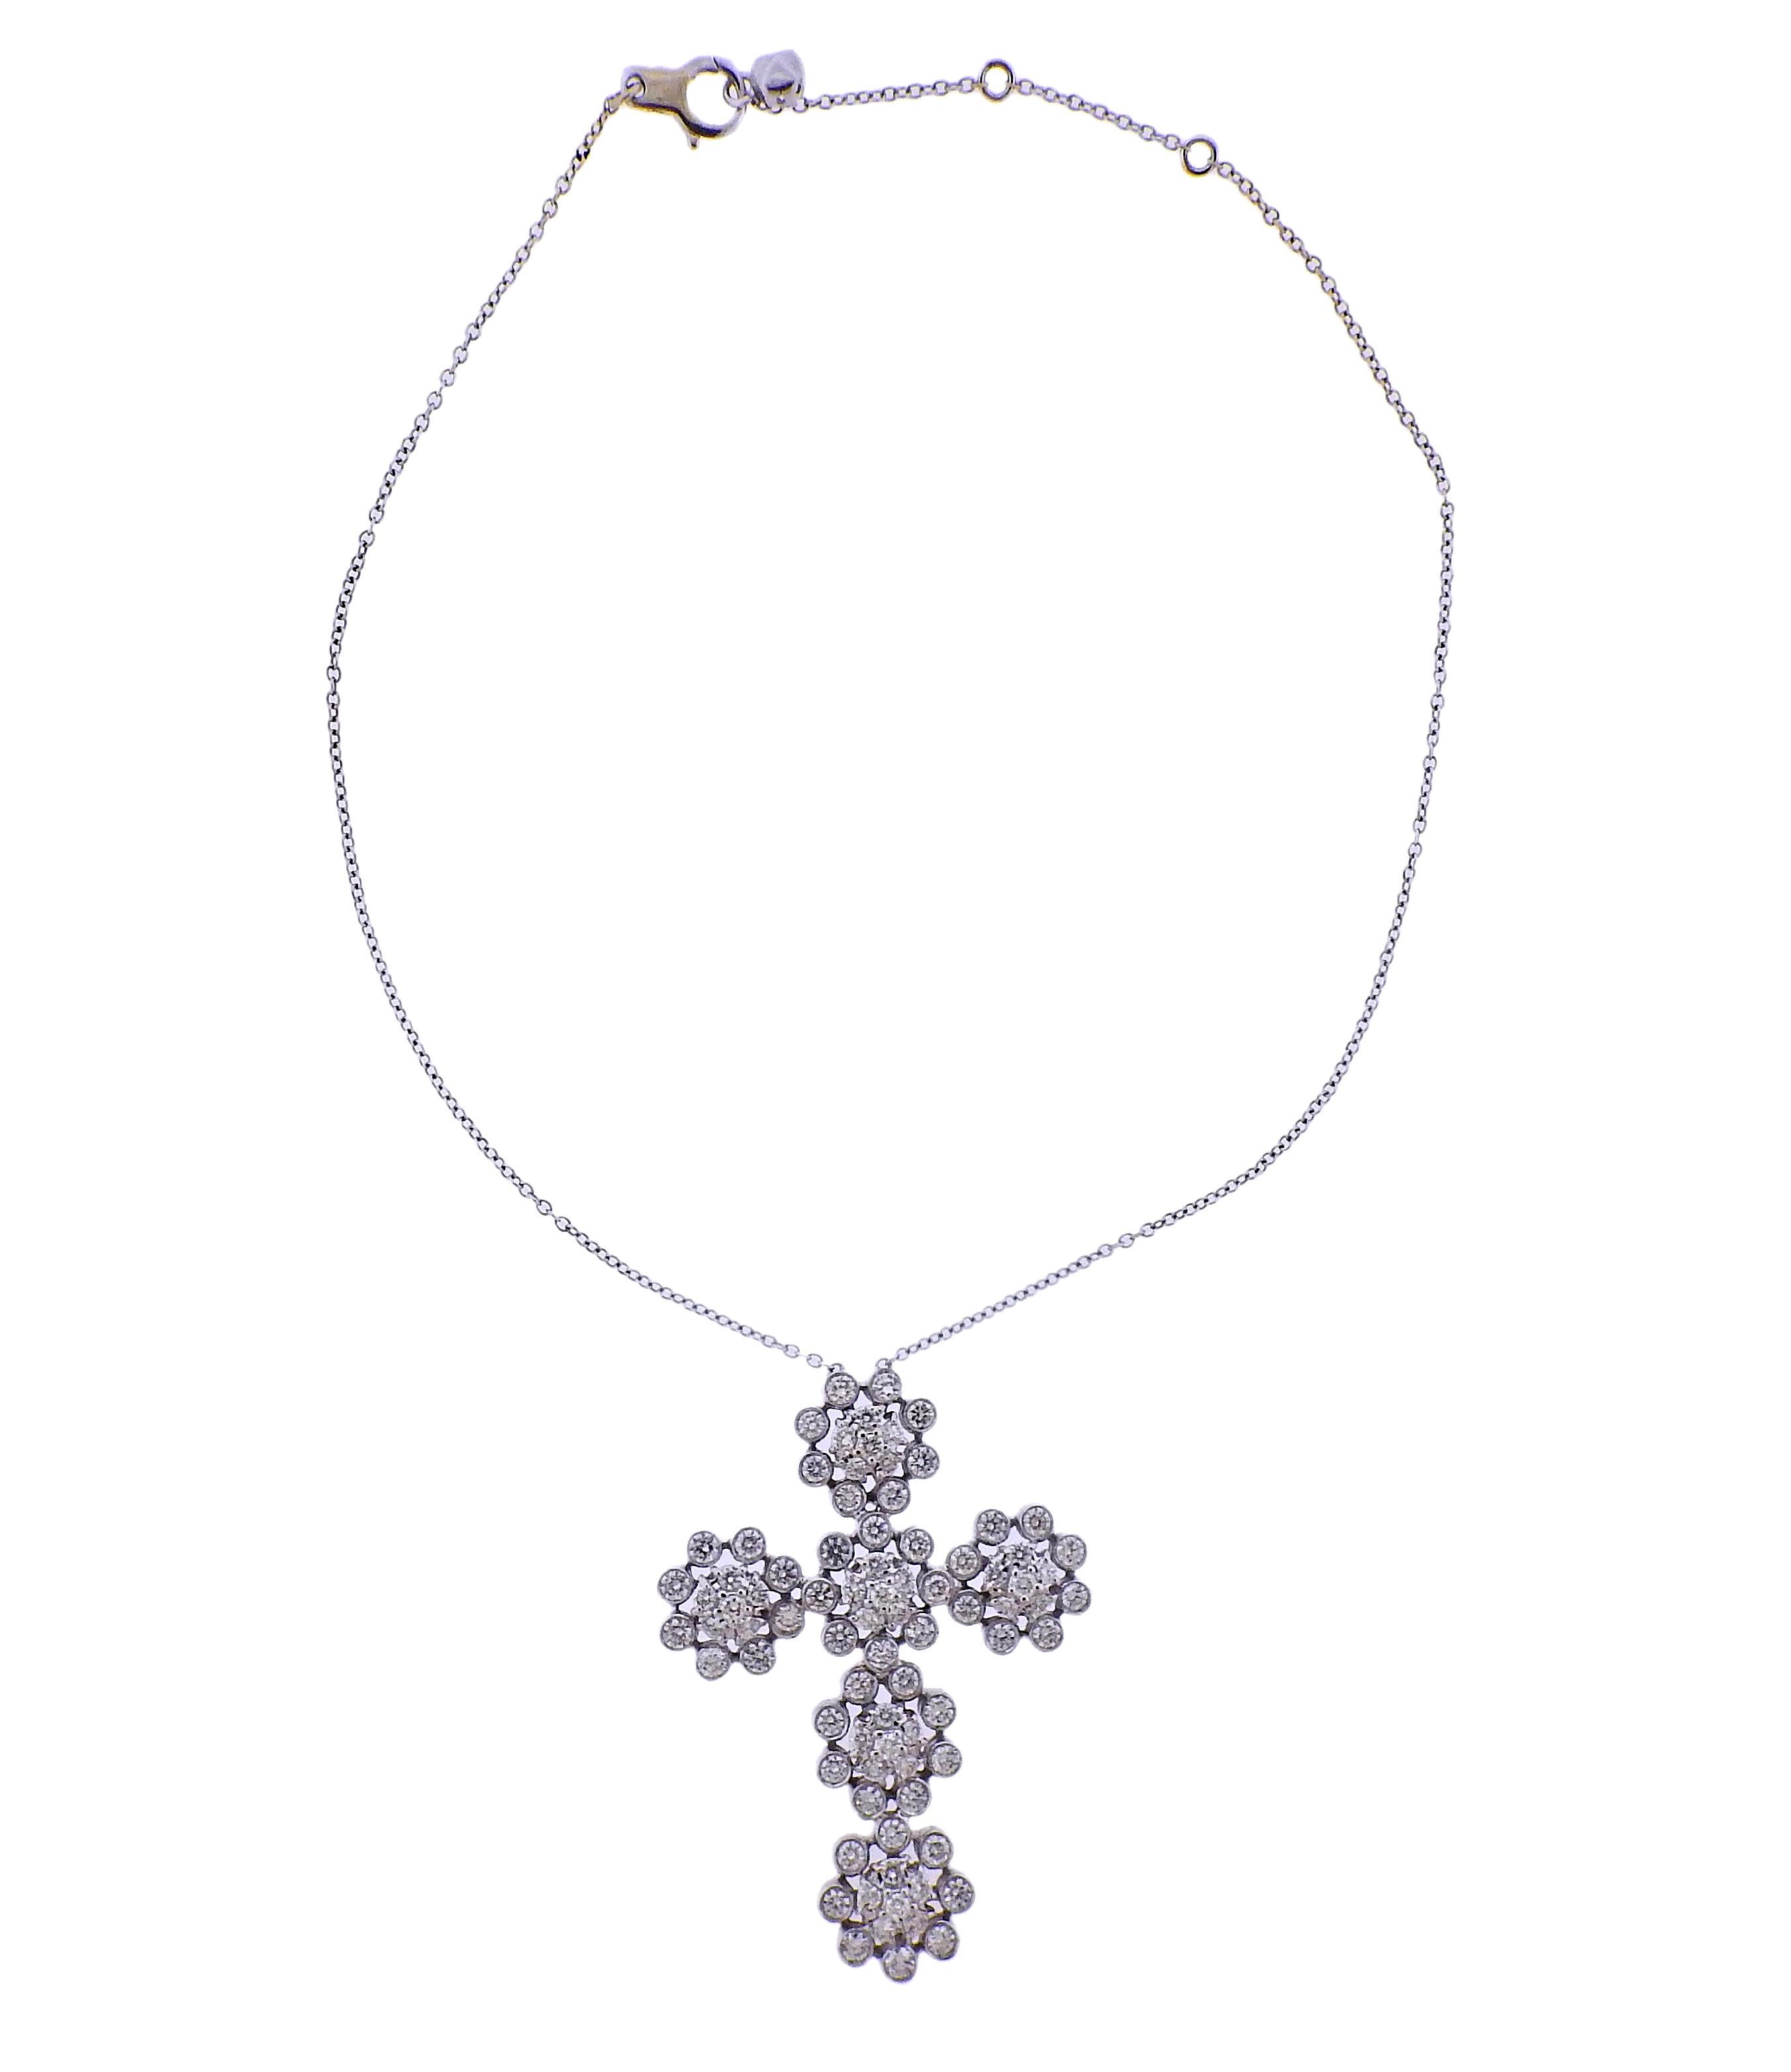 Impressionnant pendentif en forme de croix en or blanc 18 carats sur un collier en chaîne. Serti d'environ 8 carats de diamants. Le collier mesure 16,5